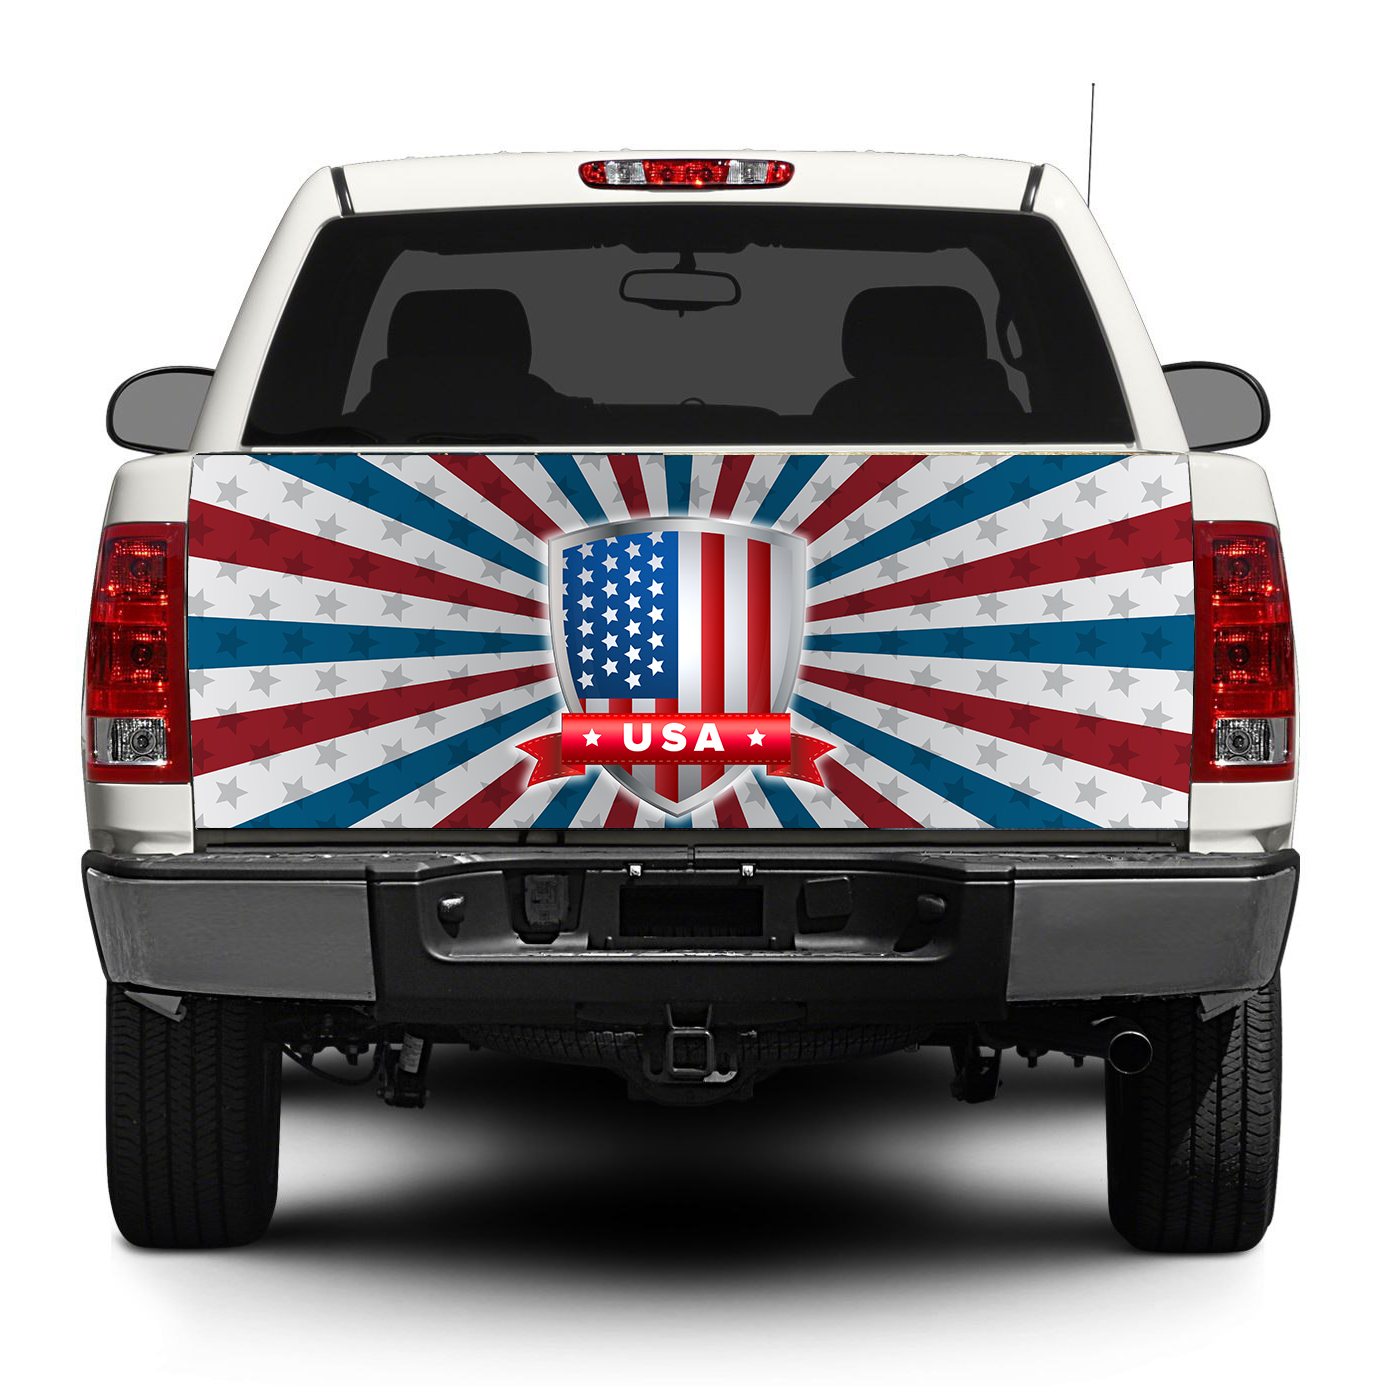 American Bandiera USA Todellana Discal Adesivo Autoadesivo Pick-up Truck Suv